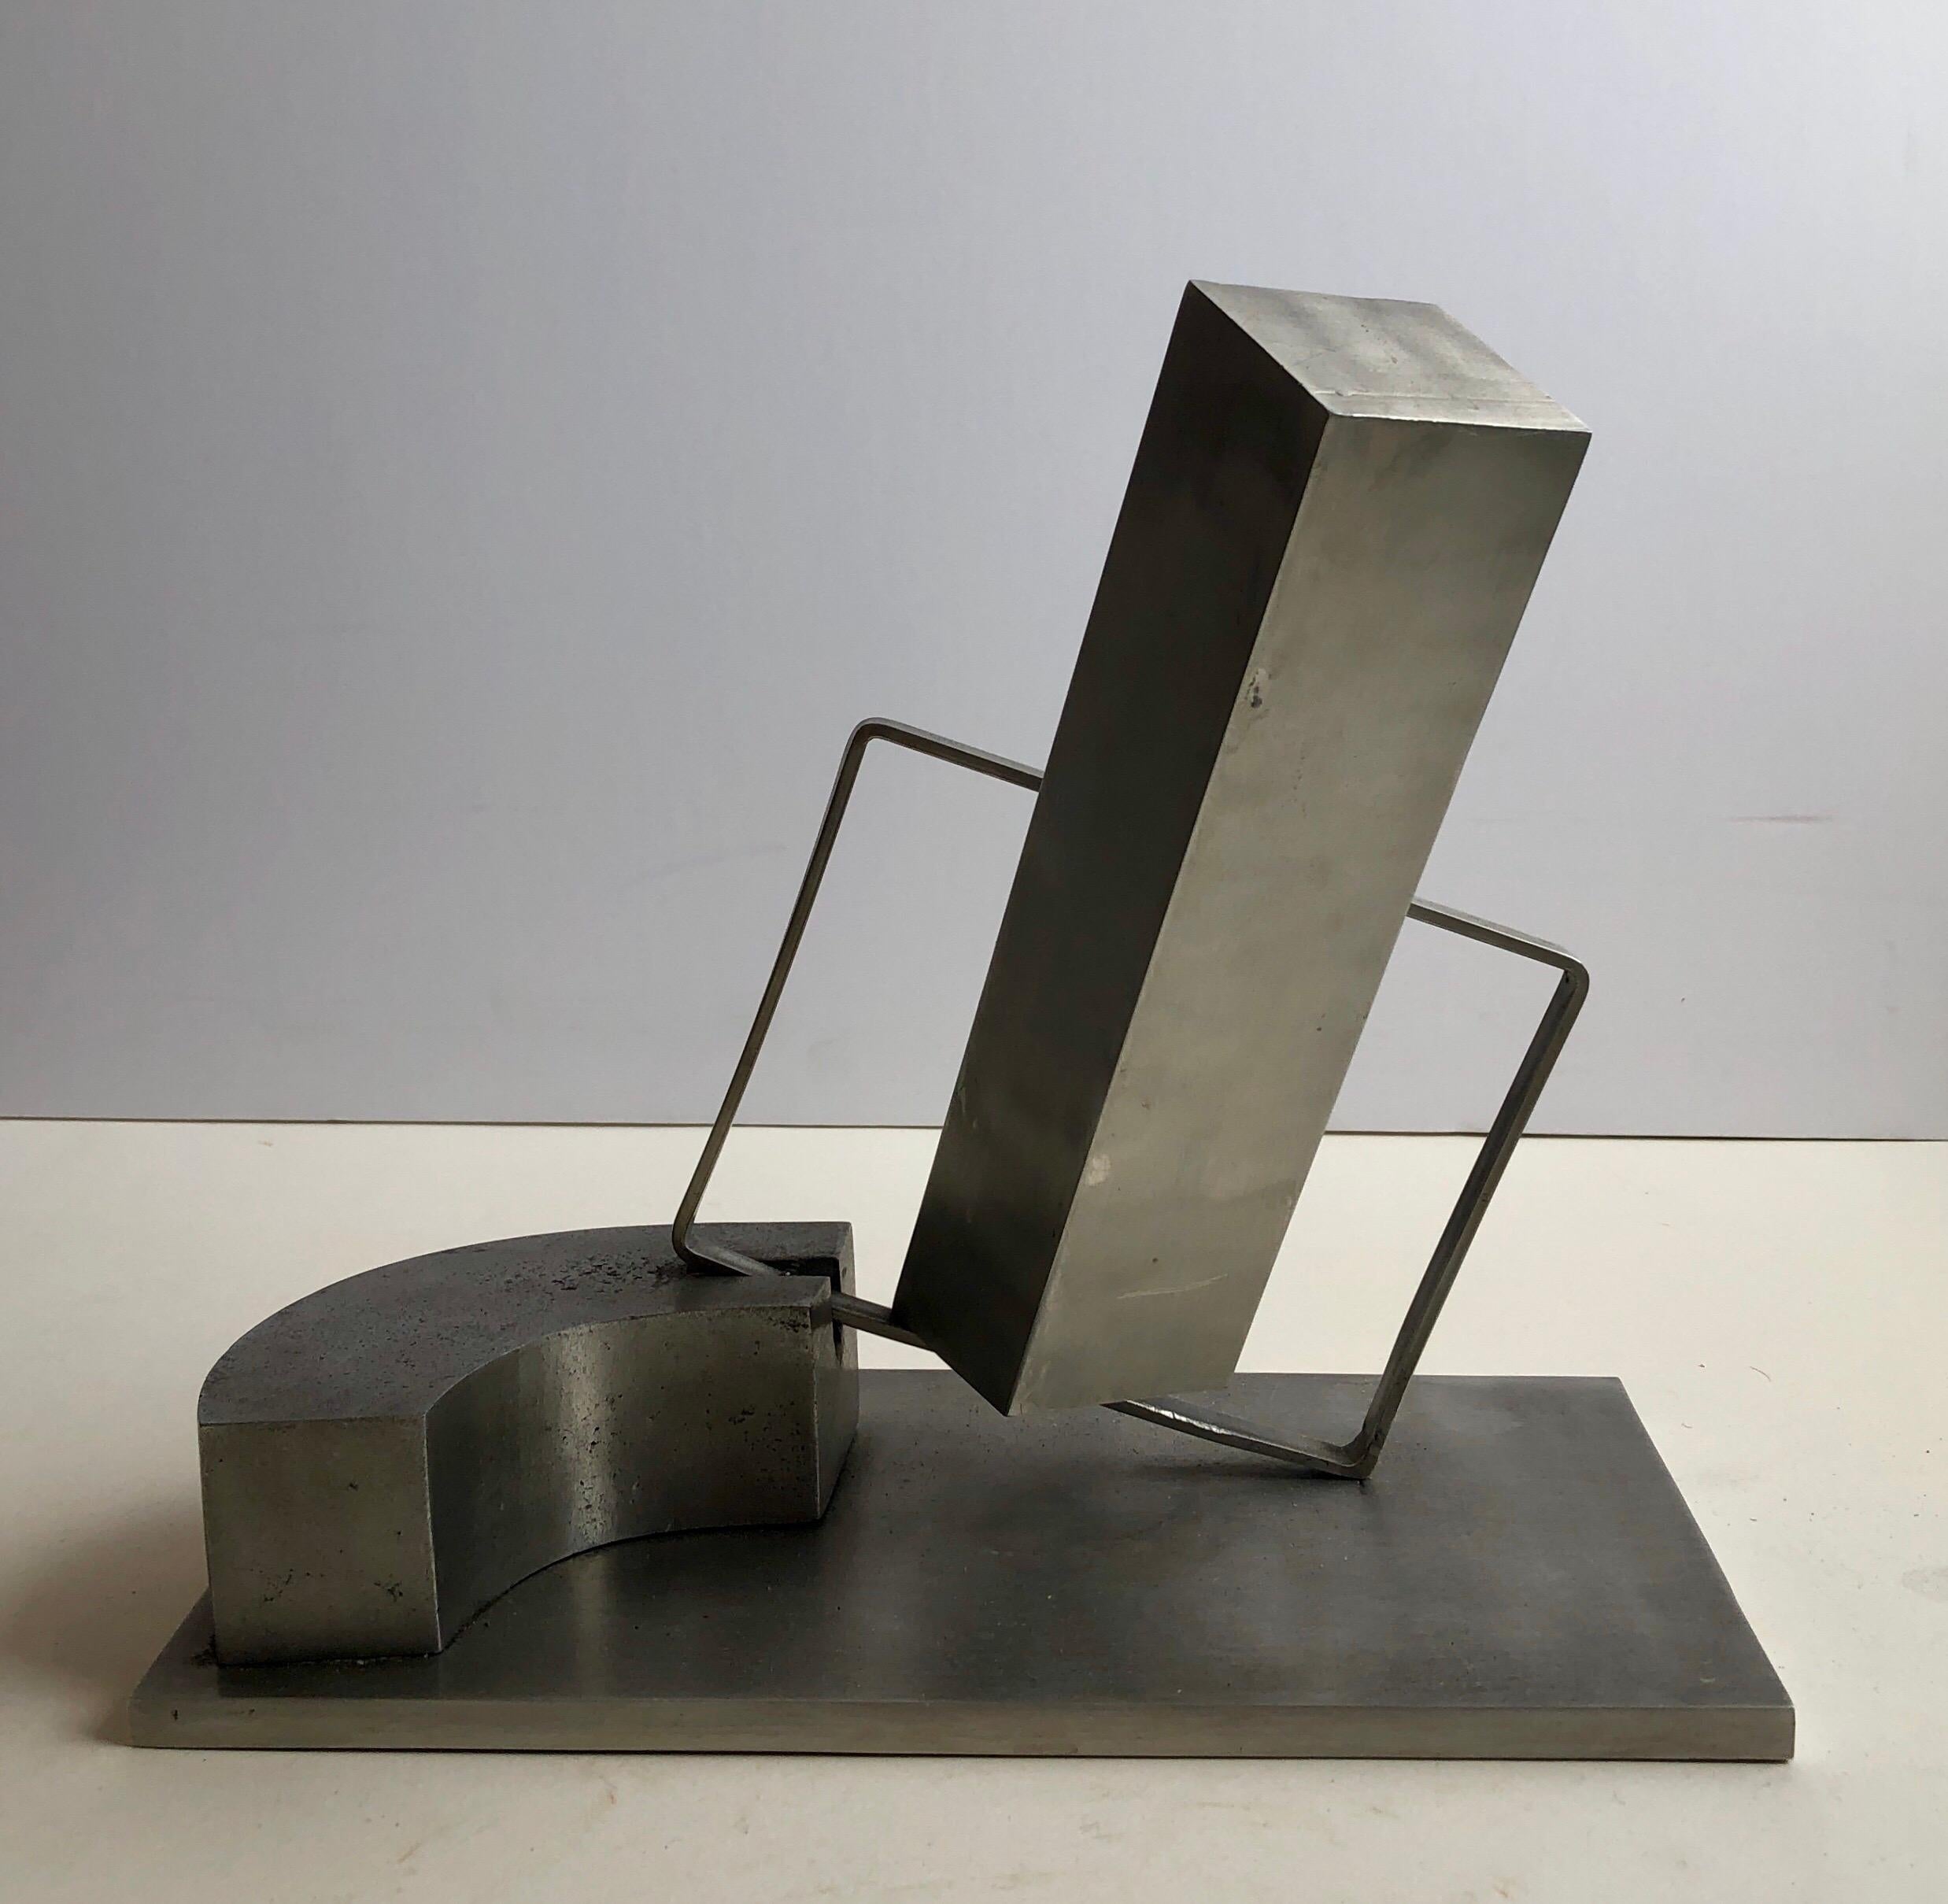 1969 Israeli Abstract Sculpture Stainless Steel Menashe Kadishman Suspension 8